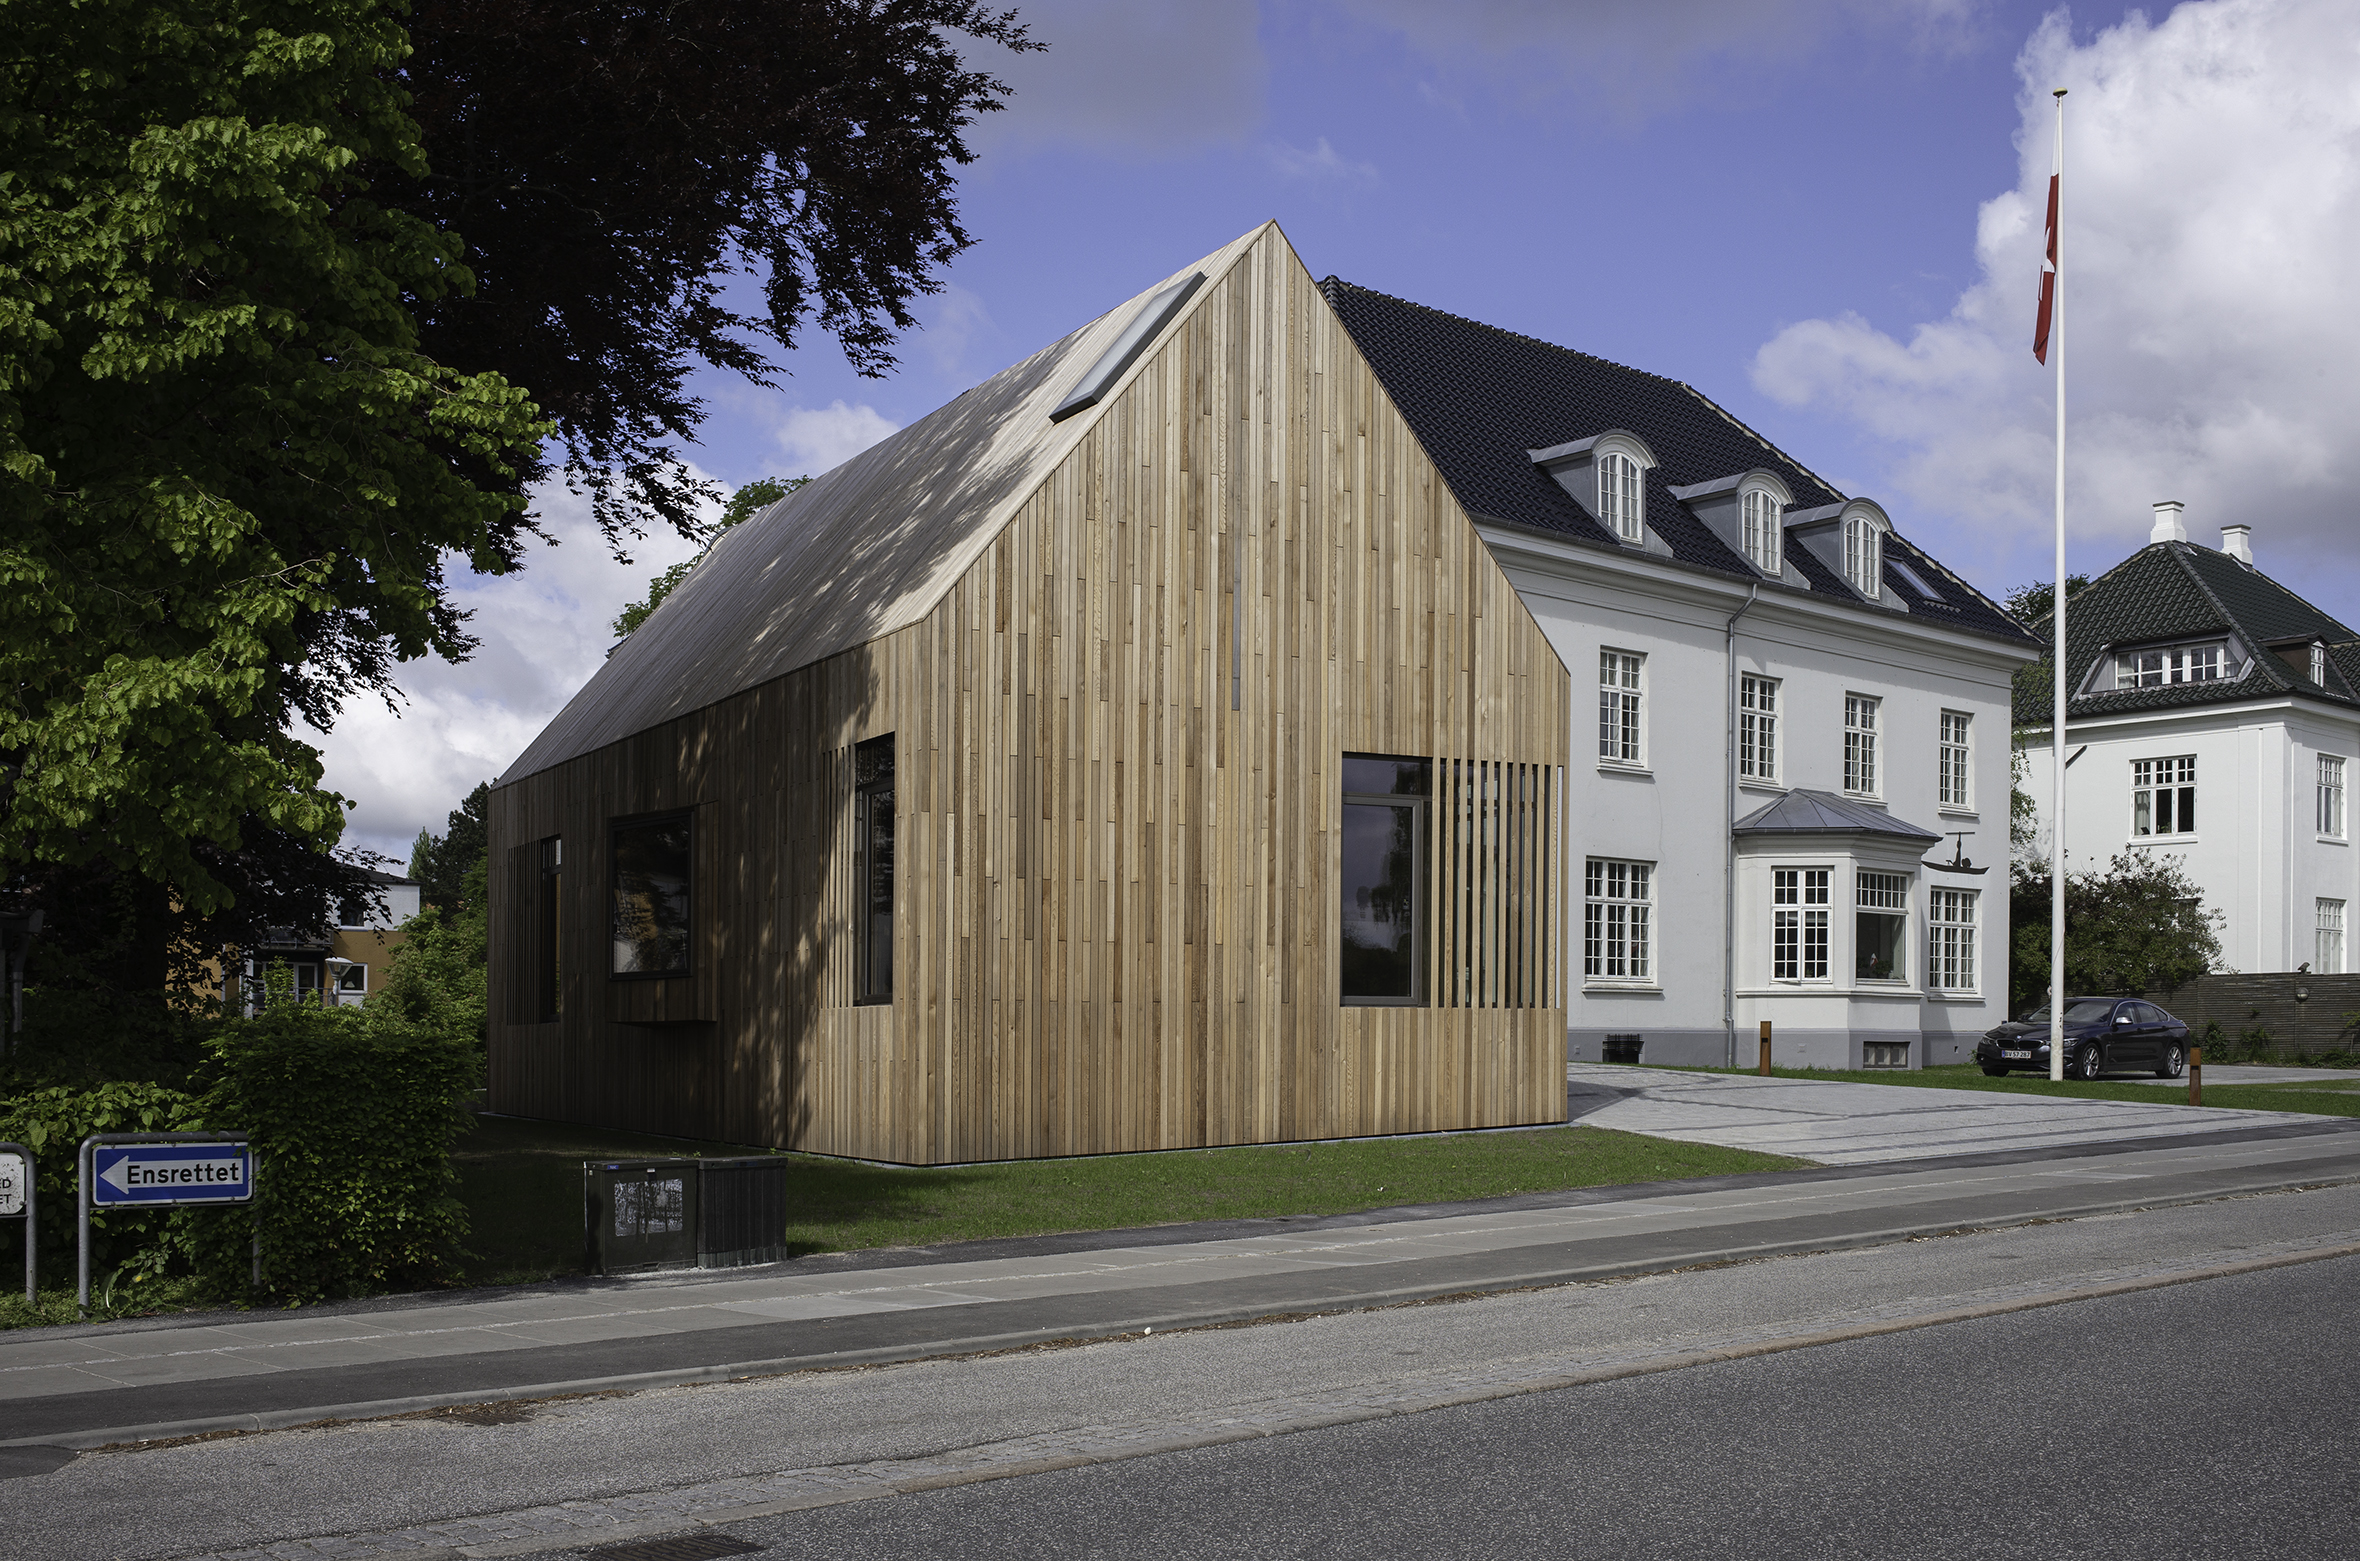 Tilbygningen med træfacade foran smuk hvid villa og flagstang med Grønlands flag